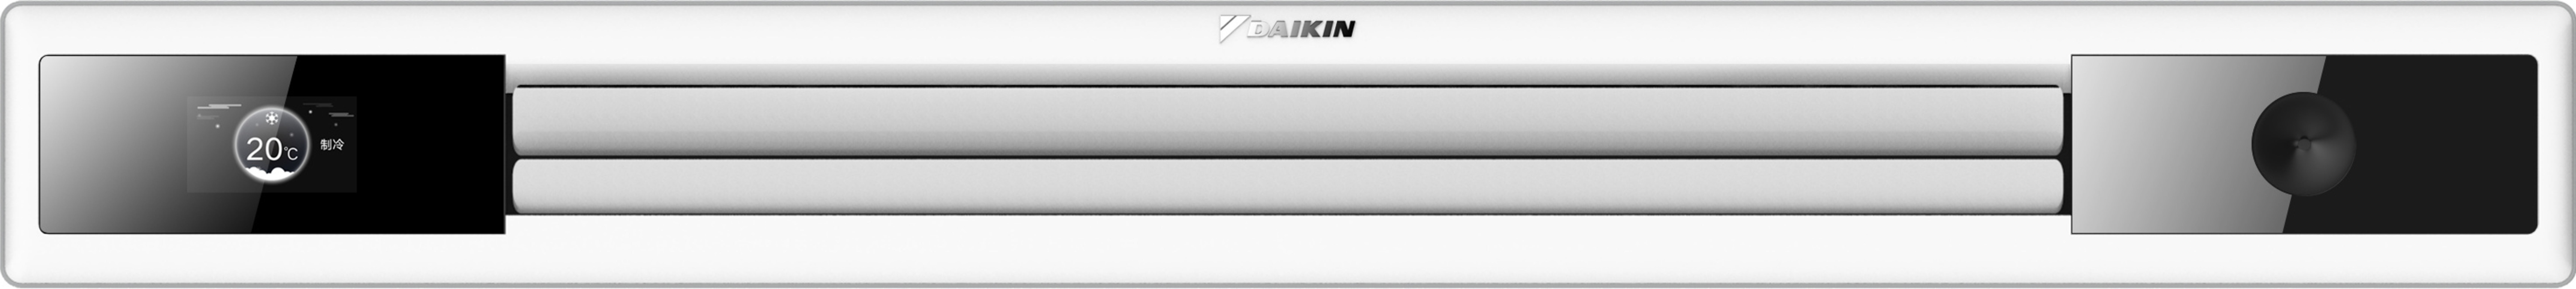 DAIKIN Air Mirror Flagship Series Air Conditioner